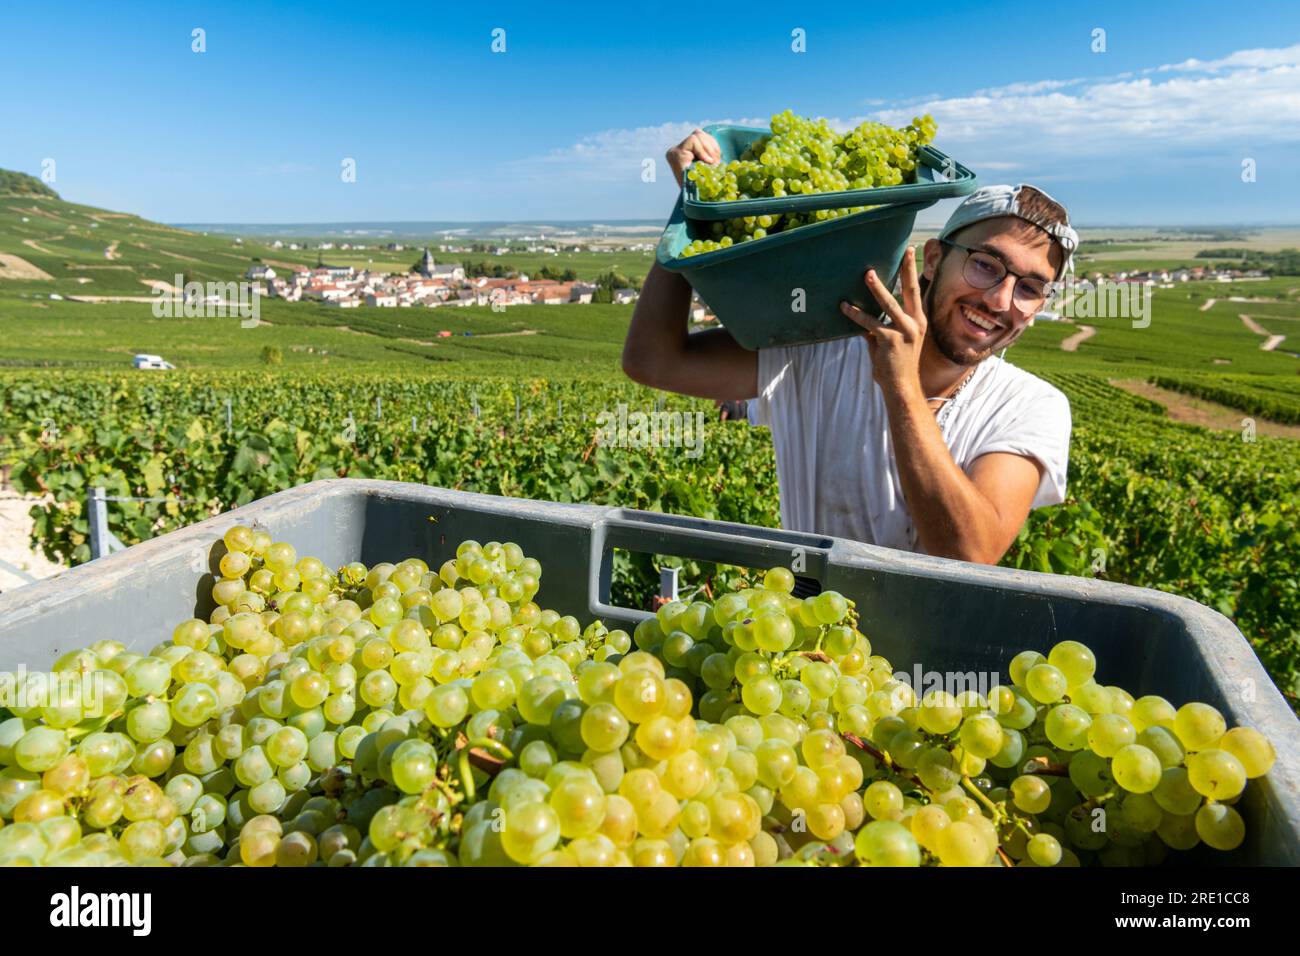 Vendanges en Champagne : travailleur saisonnier mettant les raisins en caisse et paysage avec vignes à Mesnil sur Oger (nord-est de la France) Banque D'Images